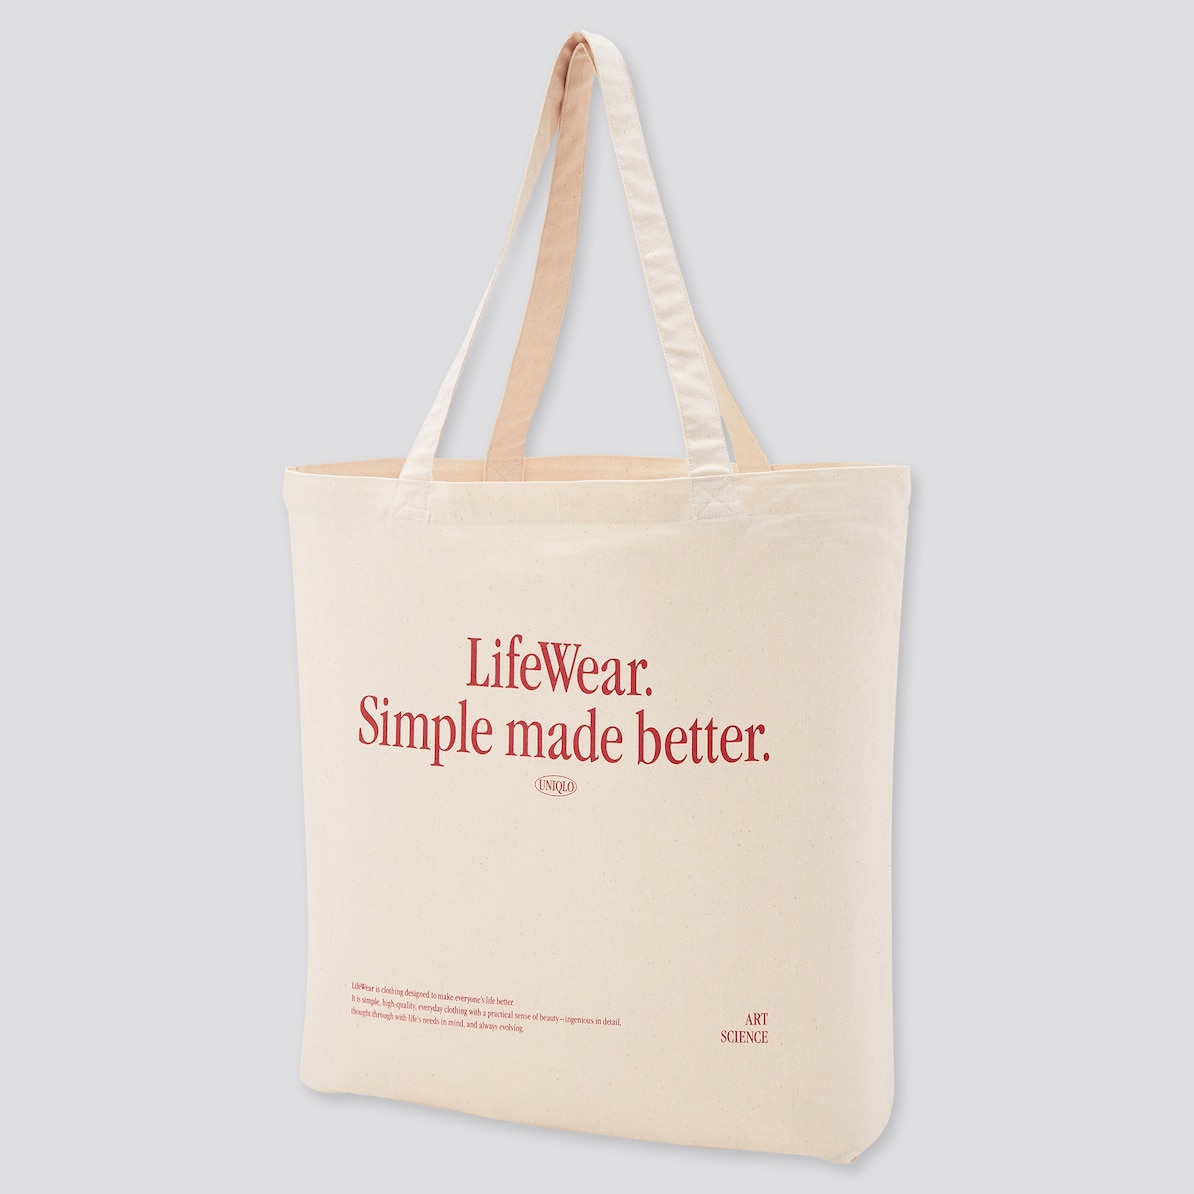 这是印着“LifeWear.Simple made better”字样的环保袋。-图取自日本优衣库官网-